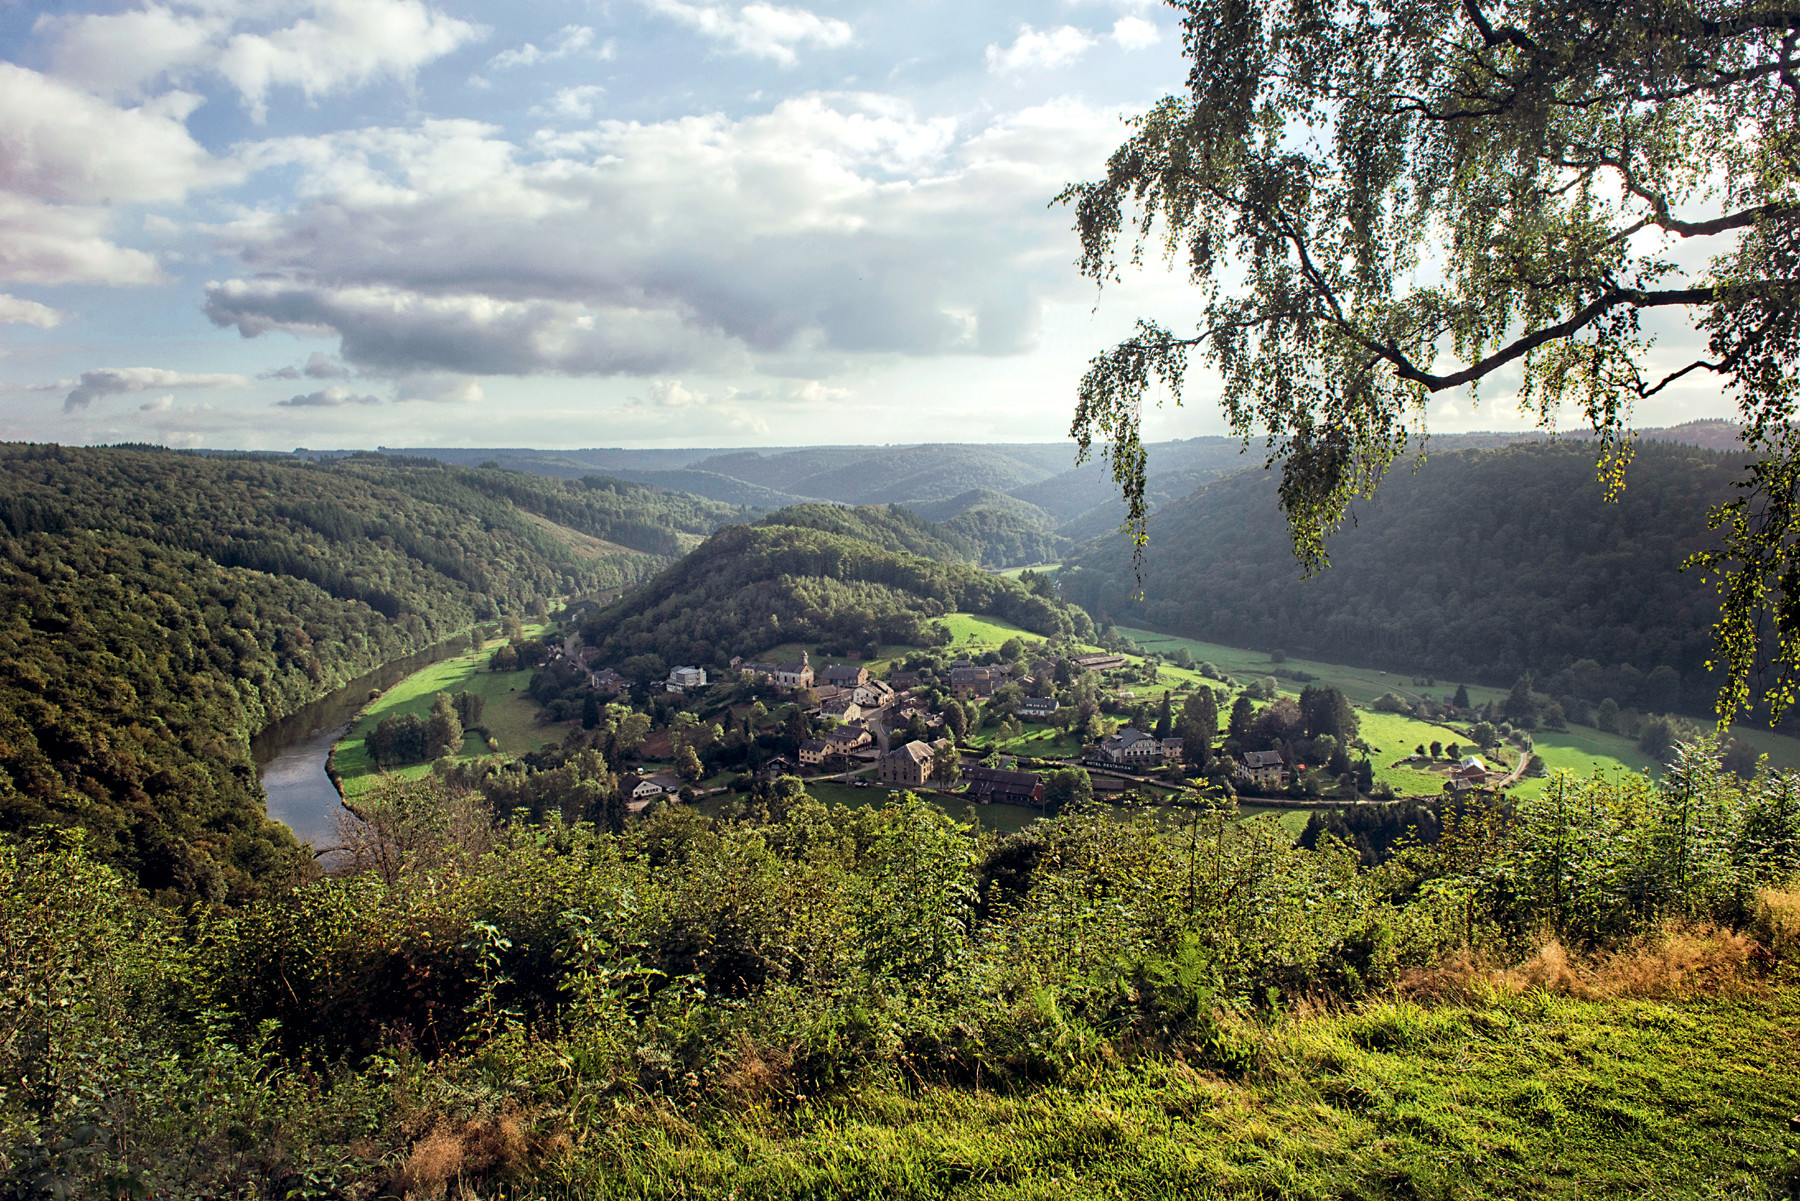 De vallei van de Ninglinspo in de Belgische Ardennen. Foto: Michael Dehaspe